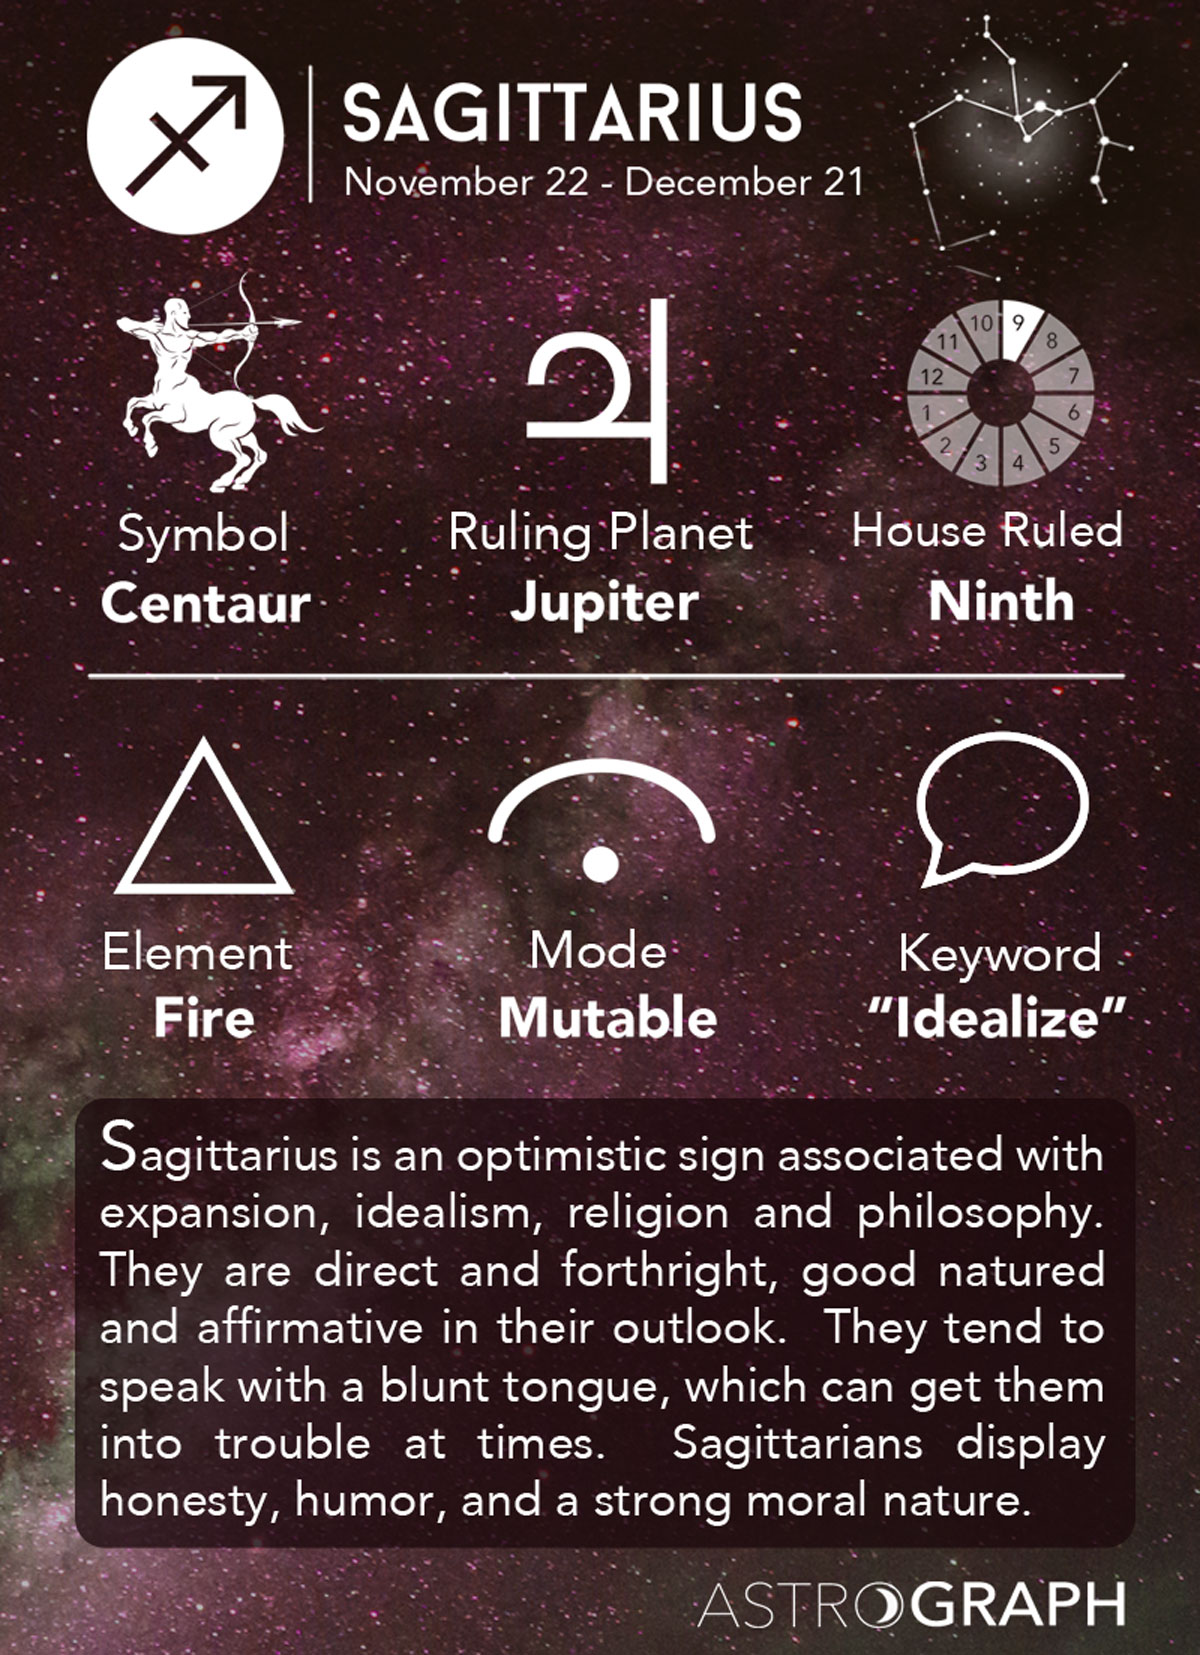 6. Sagittarius